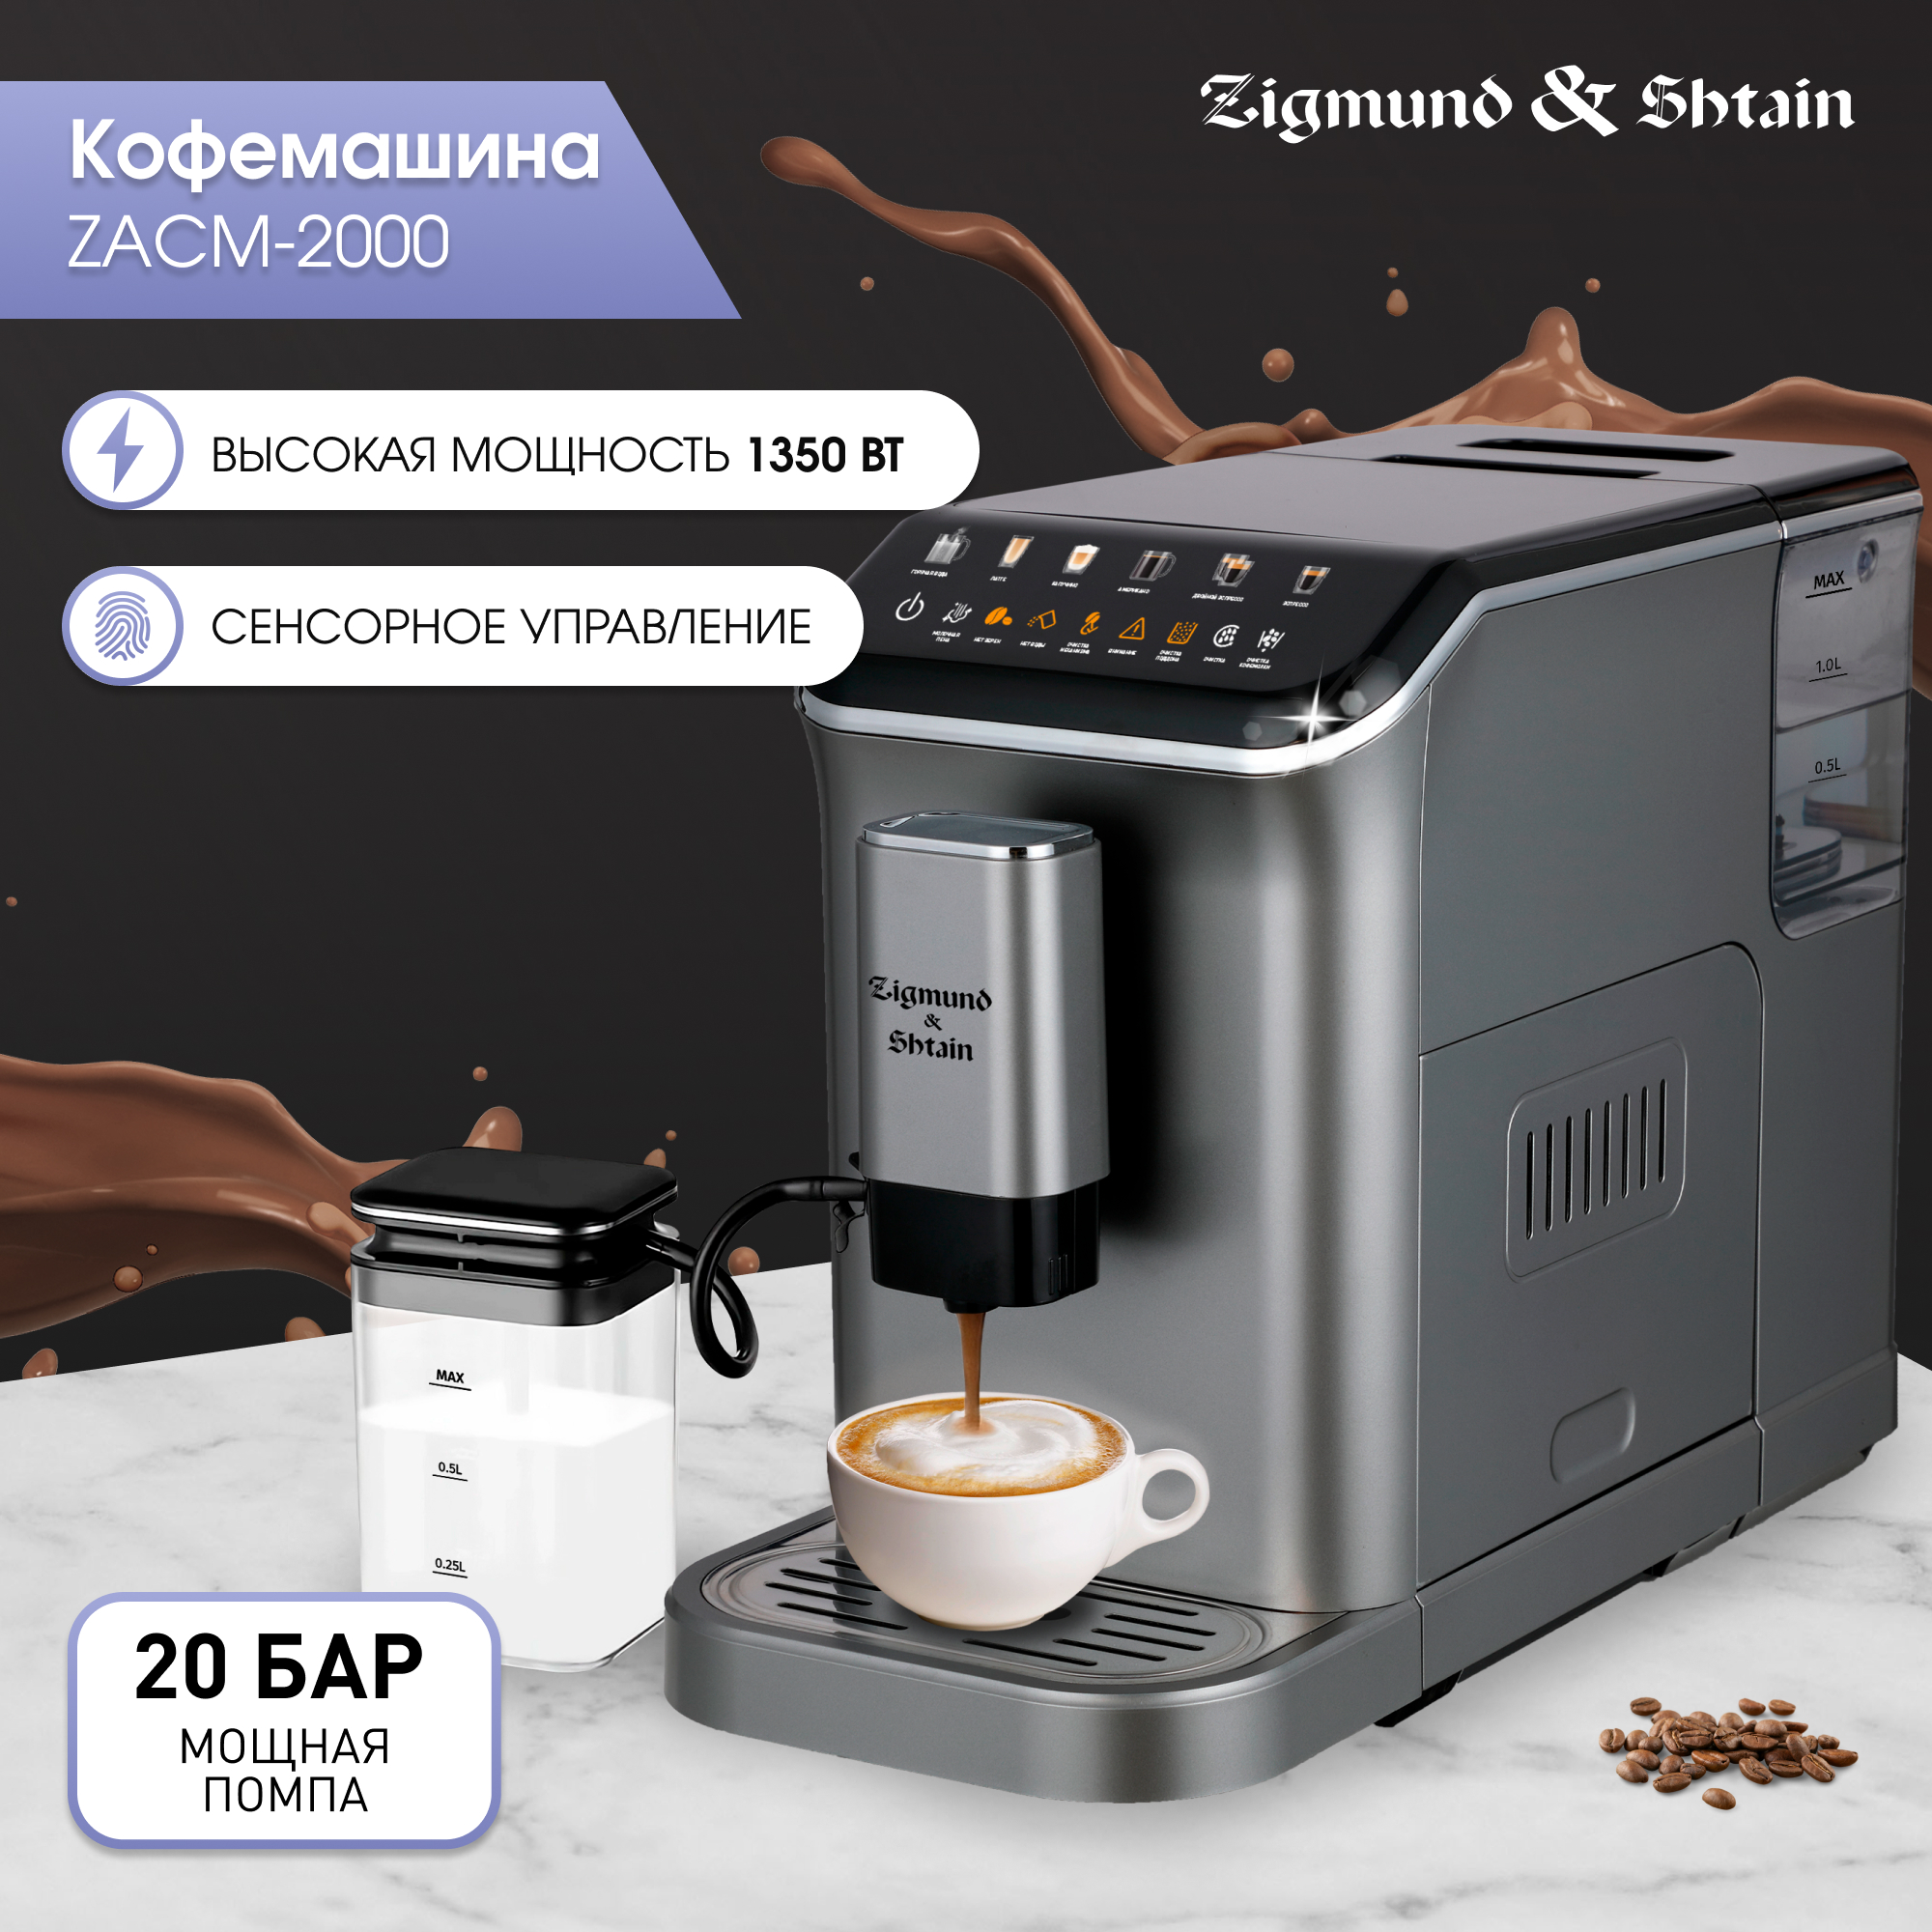 Кофемашина автоматическая Zigmund & Shtain ZACM-2000 серая автоматический капучинатор емкость для молока xs600010 дубль